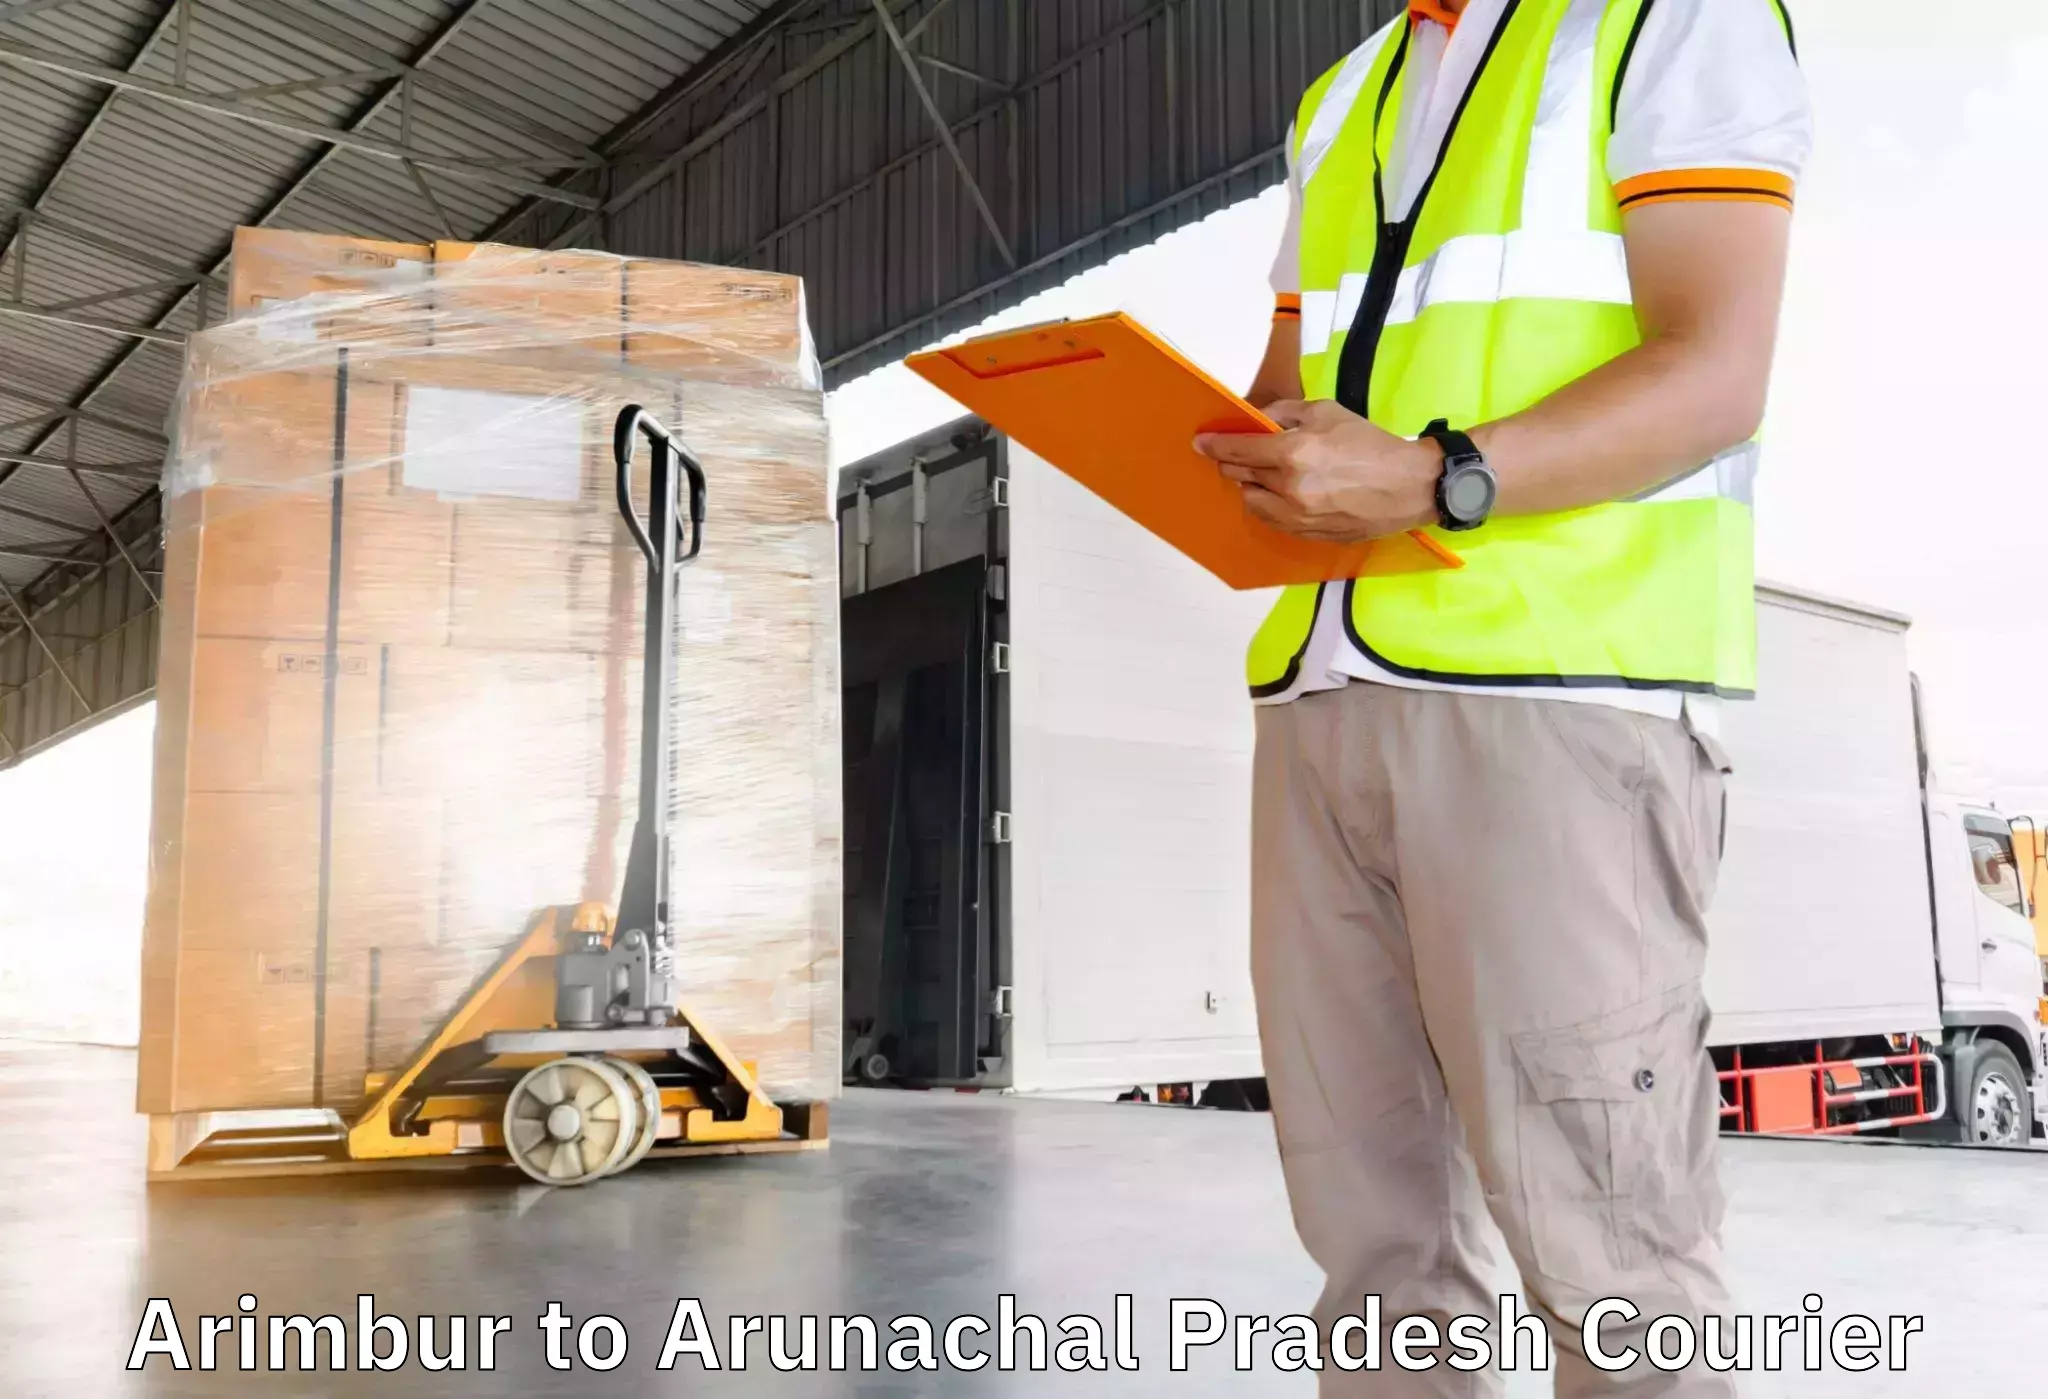 Home goods moving company Arimbur to Itanagar